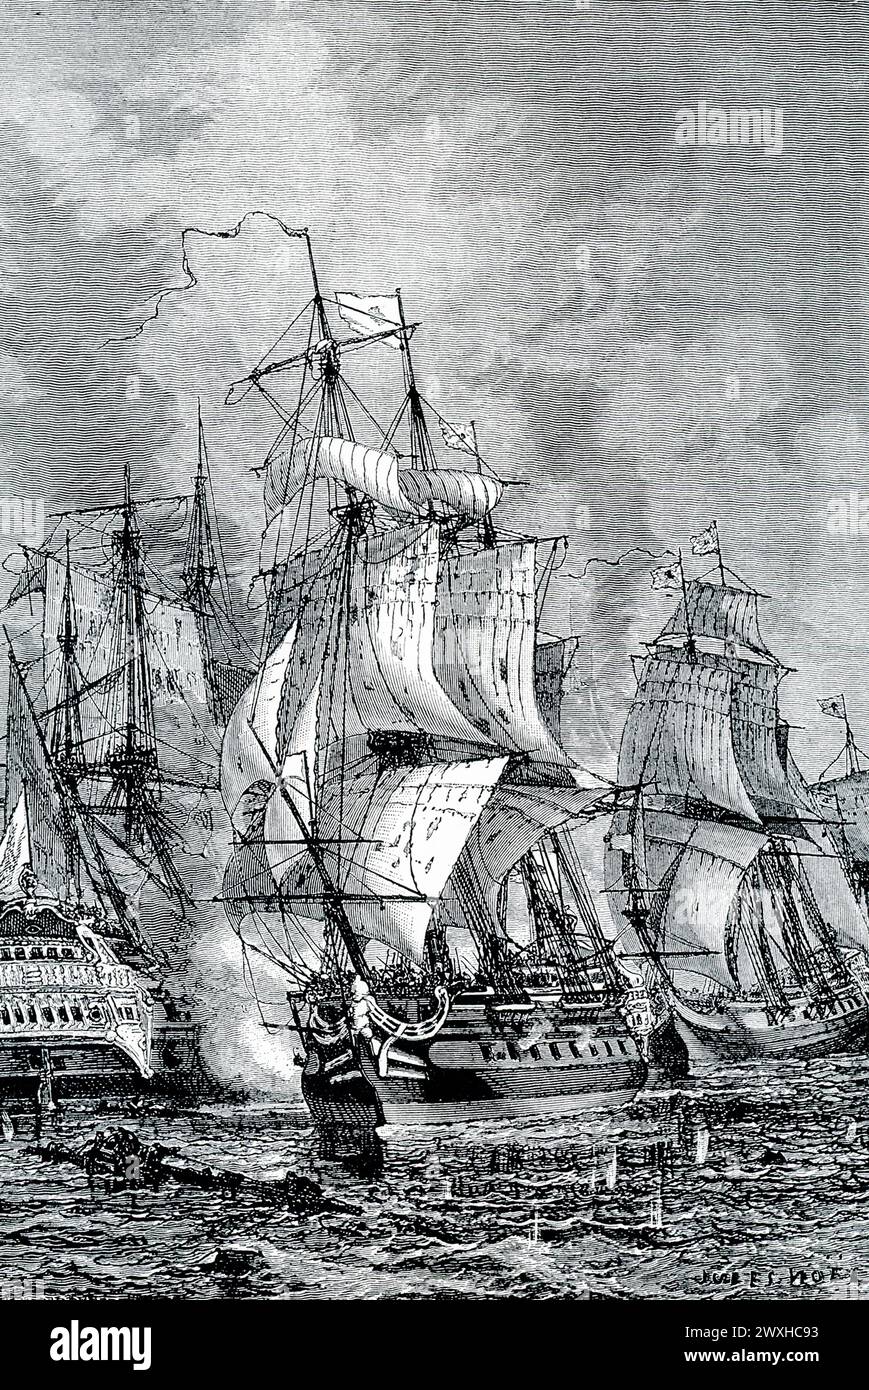 La légende du début des années 1900 se lit comme suit : « BLAKE'S NAVAL VICTORY ON VAN TROMP, 1653. — À l'époque de Cromwell, les Hollandais et les Anglais ont eu leur lutte épique pour la maîtrise des mers. Les Hollandais ont vaincu le célèbre amiral anglais Blake, et il est dit que Van Tromp a hissé un balai à la tête de mât comme signe qu'il avait balayé les Anglais des mers. Mais Blake a eu sa revanche en battant la flotte de Van Tromp au large de Portsmouth, et peu de temps après les Anglais ont complètement dépassé leurs anciens rivaux." Les deux parties ont remporté la bataille de Scheveningen. Banque D'Images